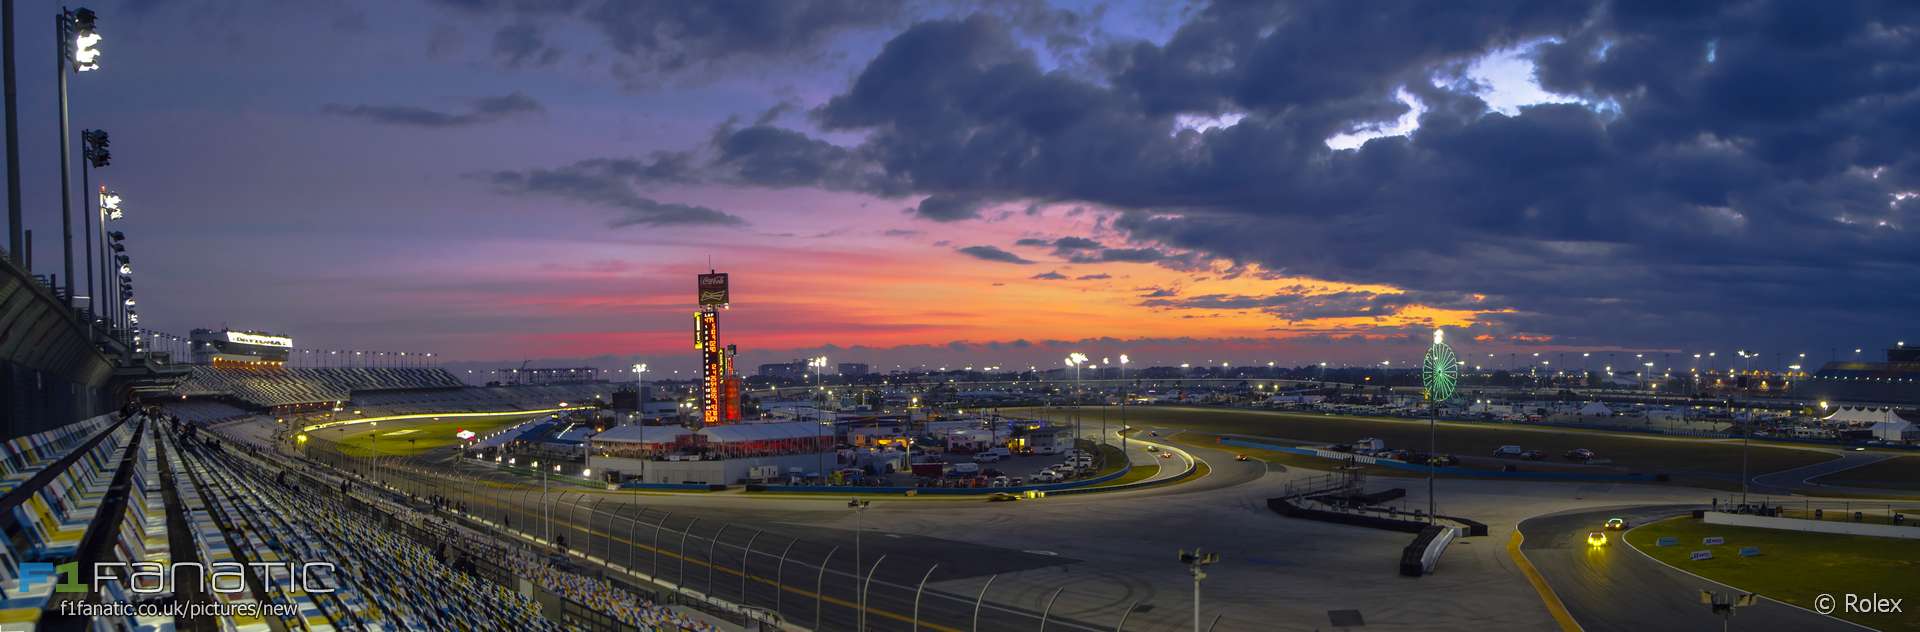 Daytona International Speedway, 2018